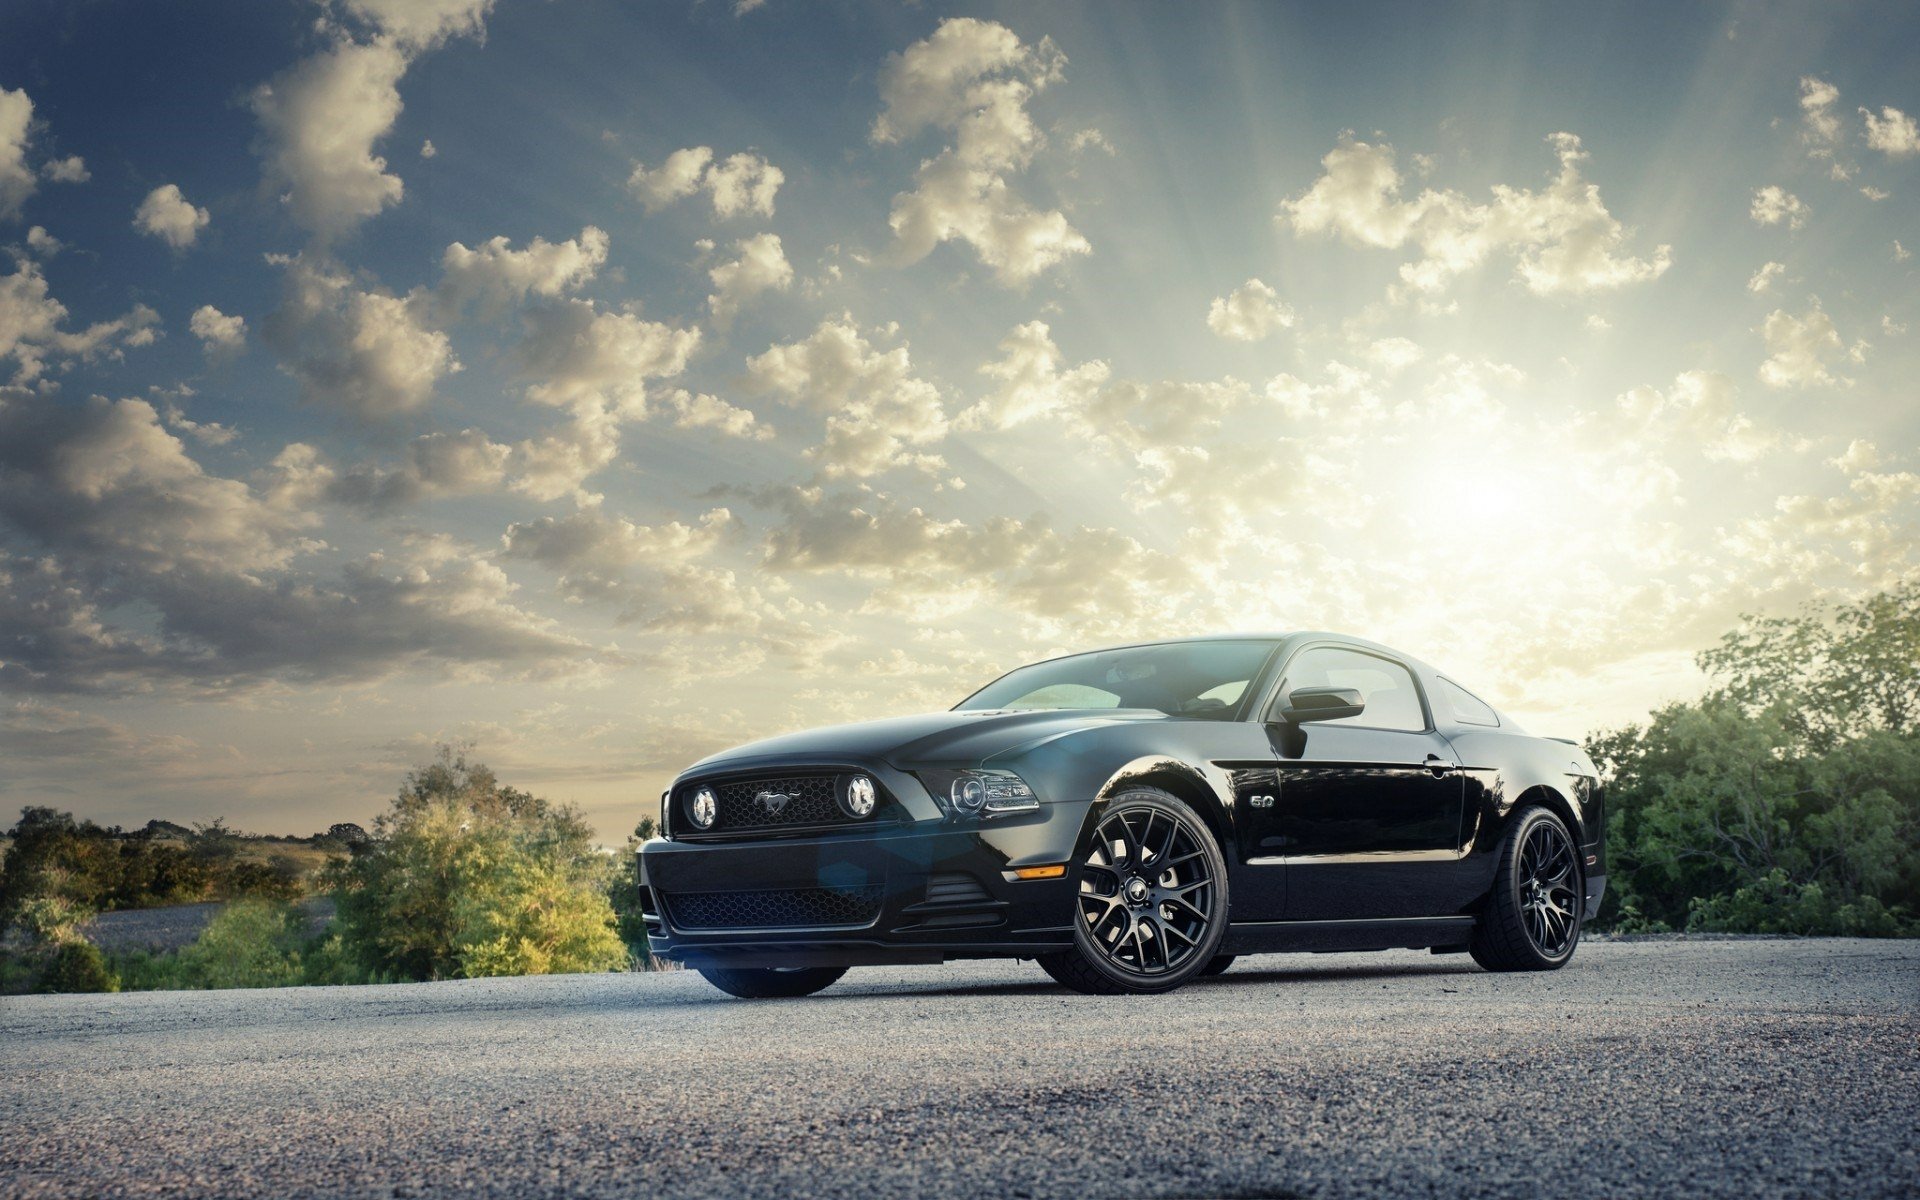 Ford Mustang: Với những đường nét thiết kế mượt mà, phong cách cổ điển nhưng vẫn đẳng cấp, chiếc xe Ford Mustang đã trở thành biểu tượng của sự độc đáo và cá tính. Hãy cùng khám phá những bức ảnh đầy cuốn hút của chiếc xe này trên đường đua.